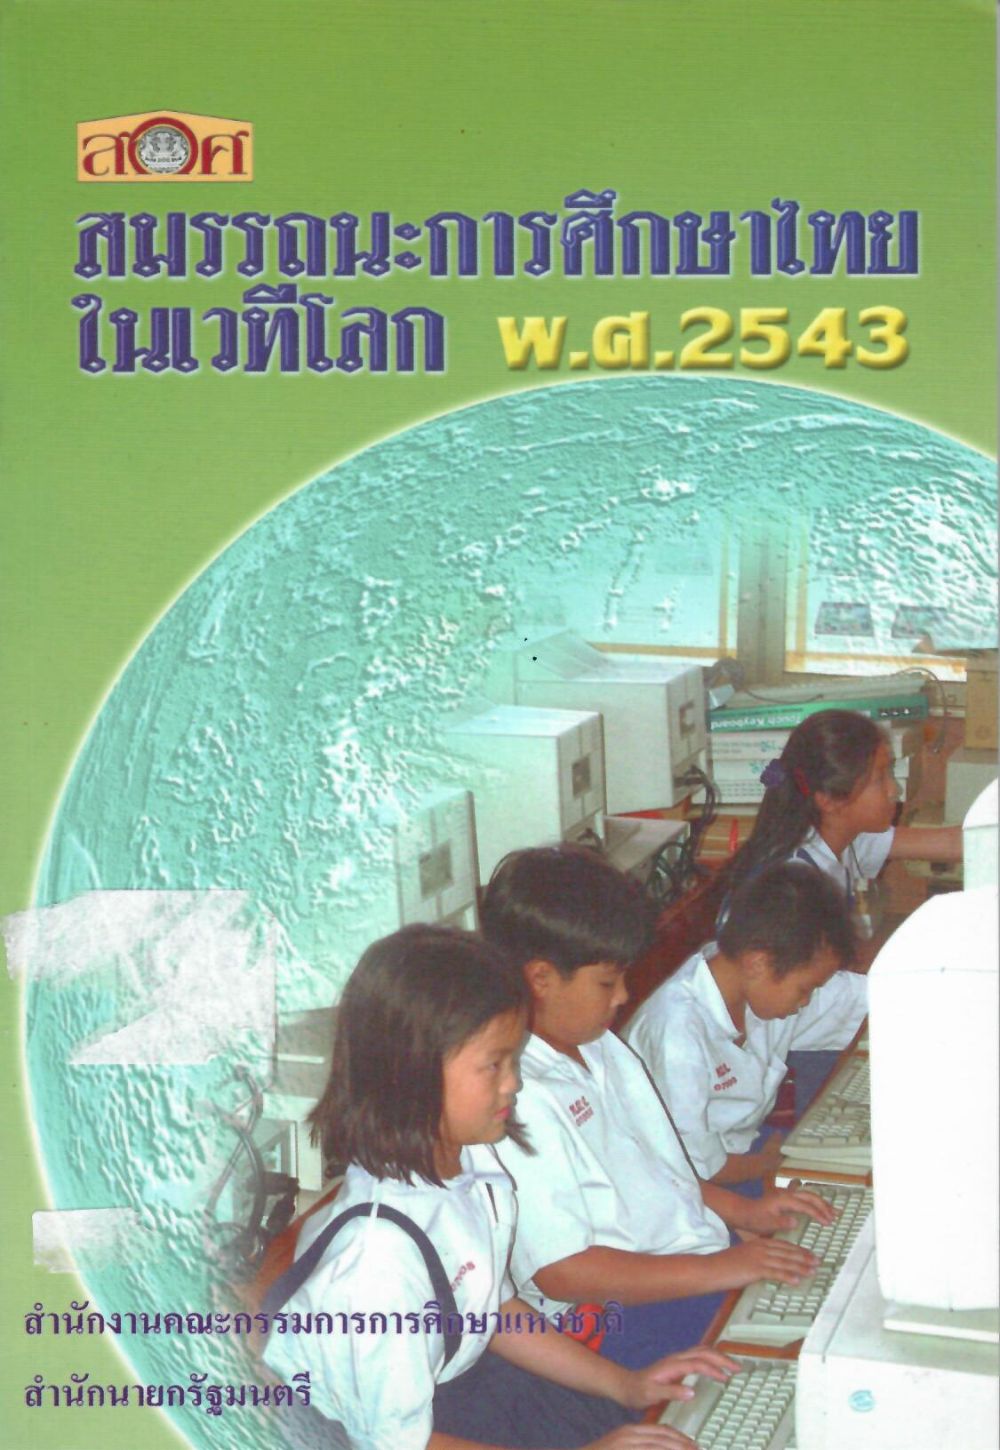 สมรรถนะการศึกษาไทยในเวทีโลก พ.ศ. 2543/ สำนักงานคณะกรรมการการศึกษาแห่งชาติ